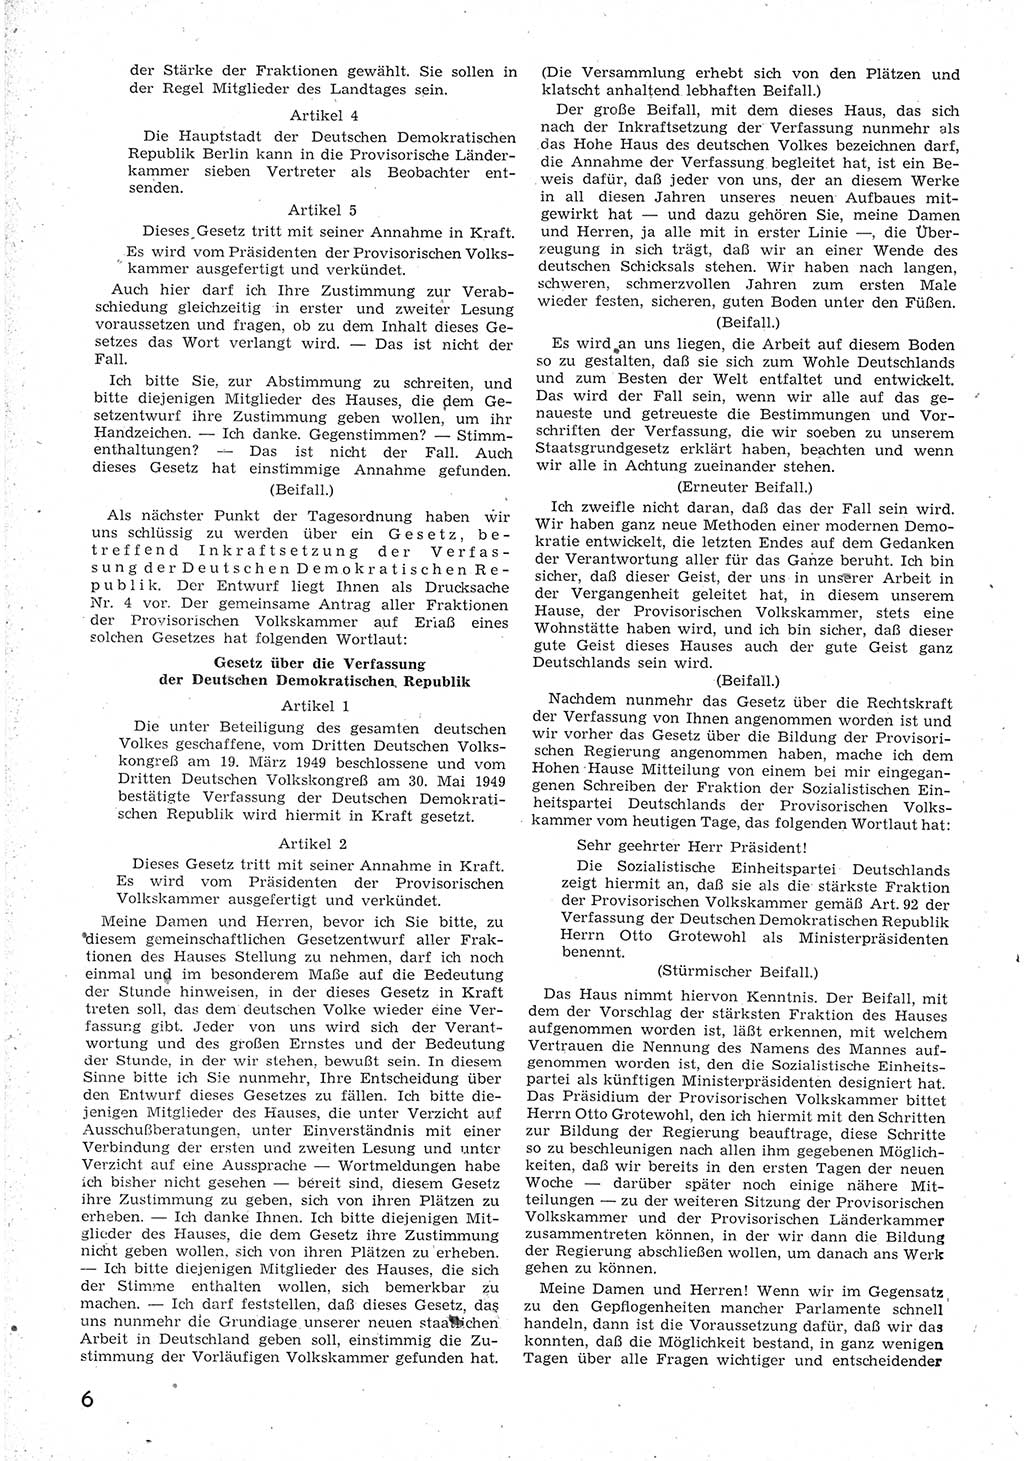 Provisorische Volkskammer (VK) der Deutschen Demokratischen Republik (DDR) 1949-1950, Dokument 18 (Prov. VK DDR 1949-1950, Dok. 18)